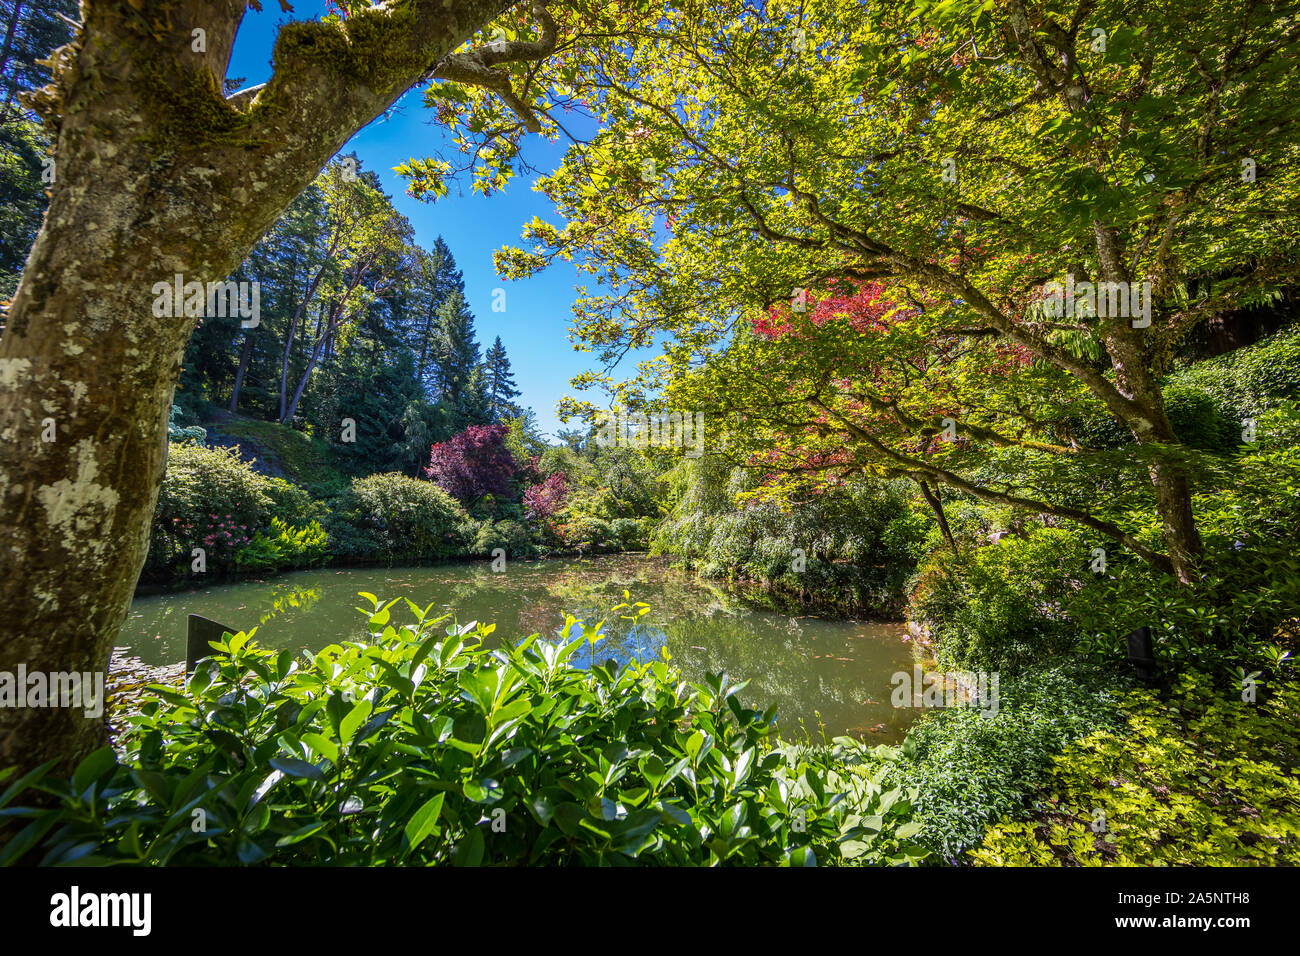 Die Butchart Gärten in Victoria, Vancouver Island, Kanada im Sommer. Anzeigen eines ausgeblendeten Teich mit Blumen und Bäumen des historischen Garten. Stockfoto